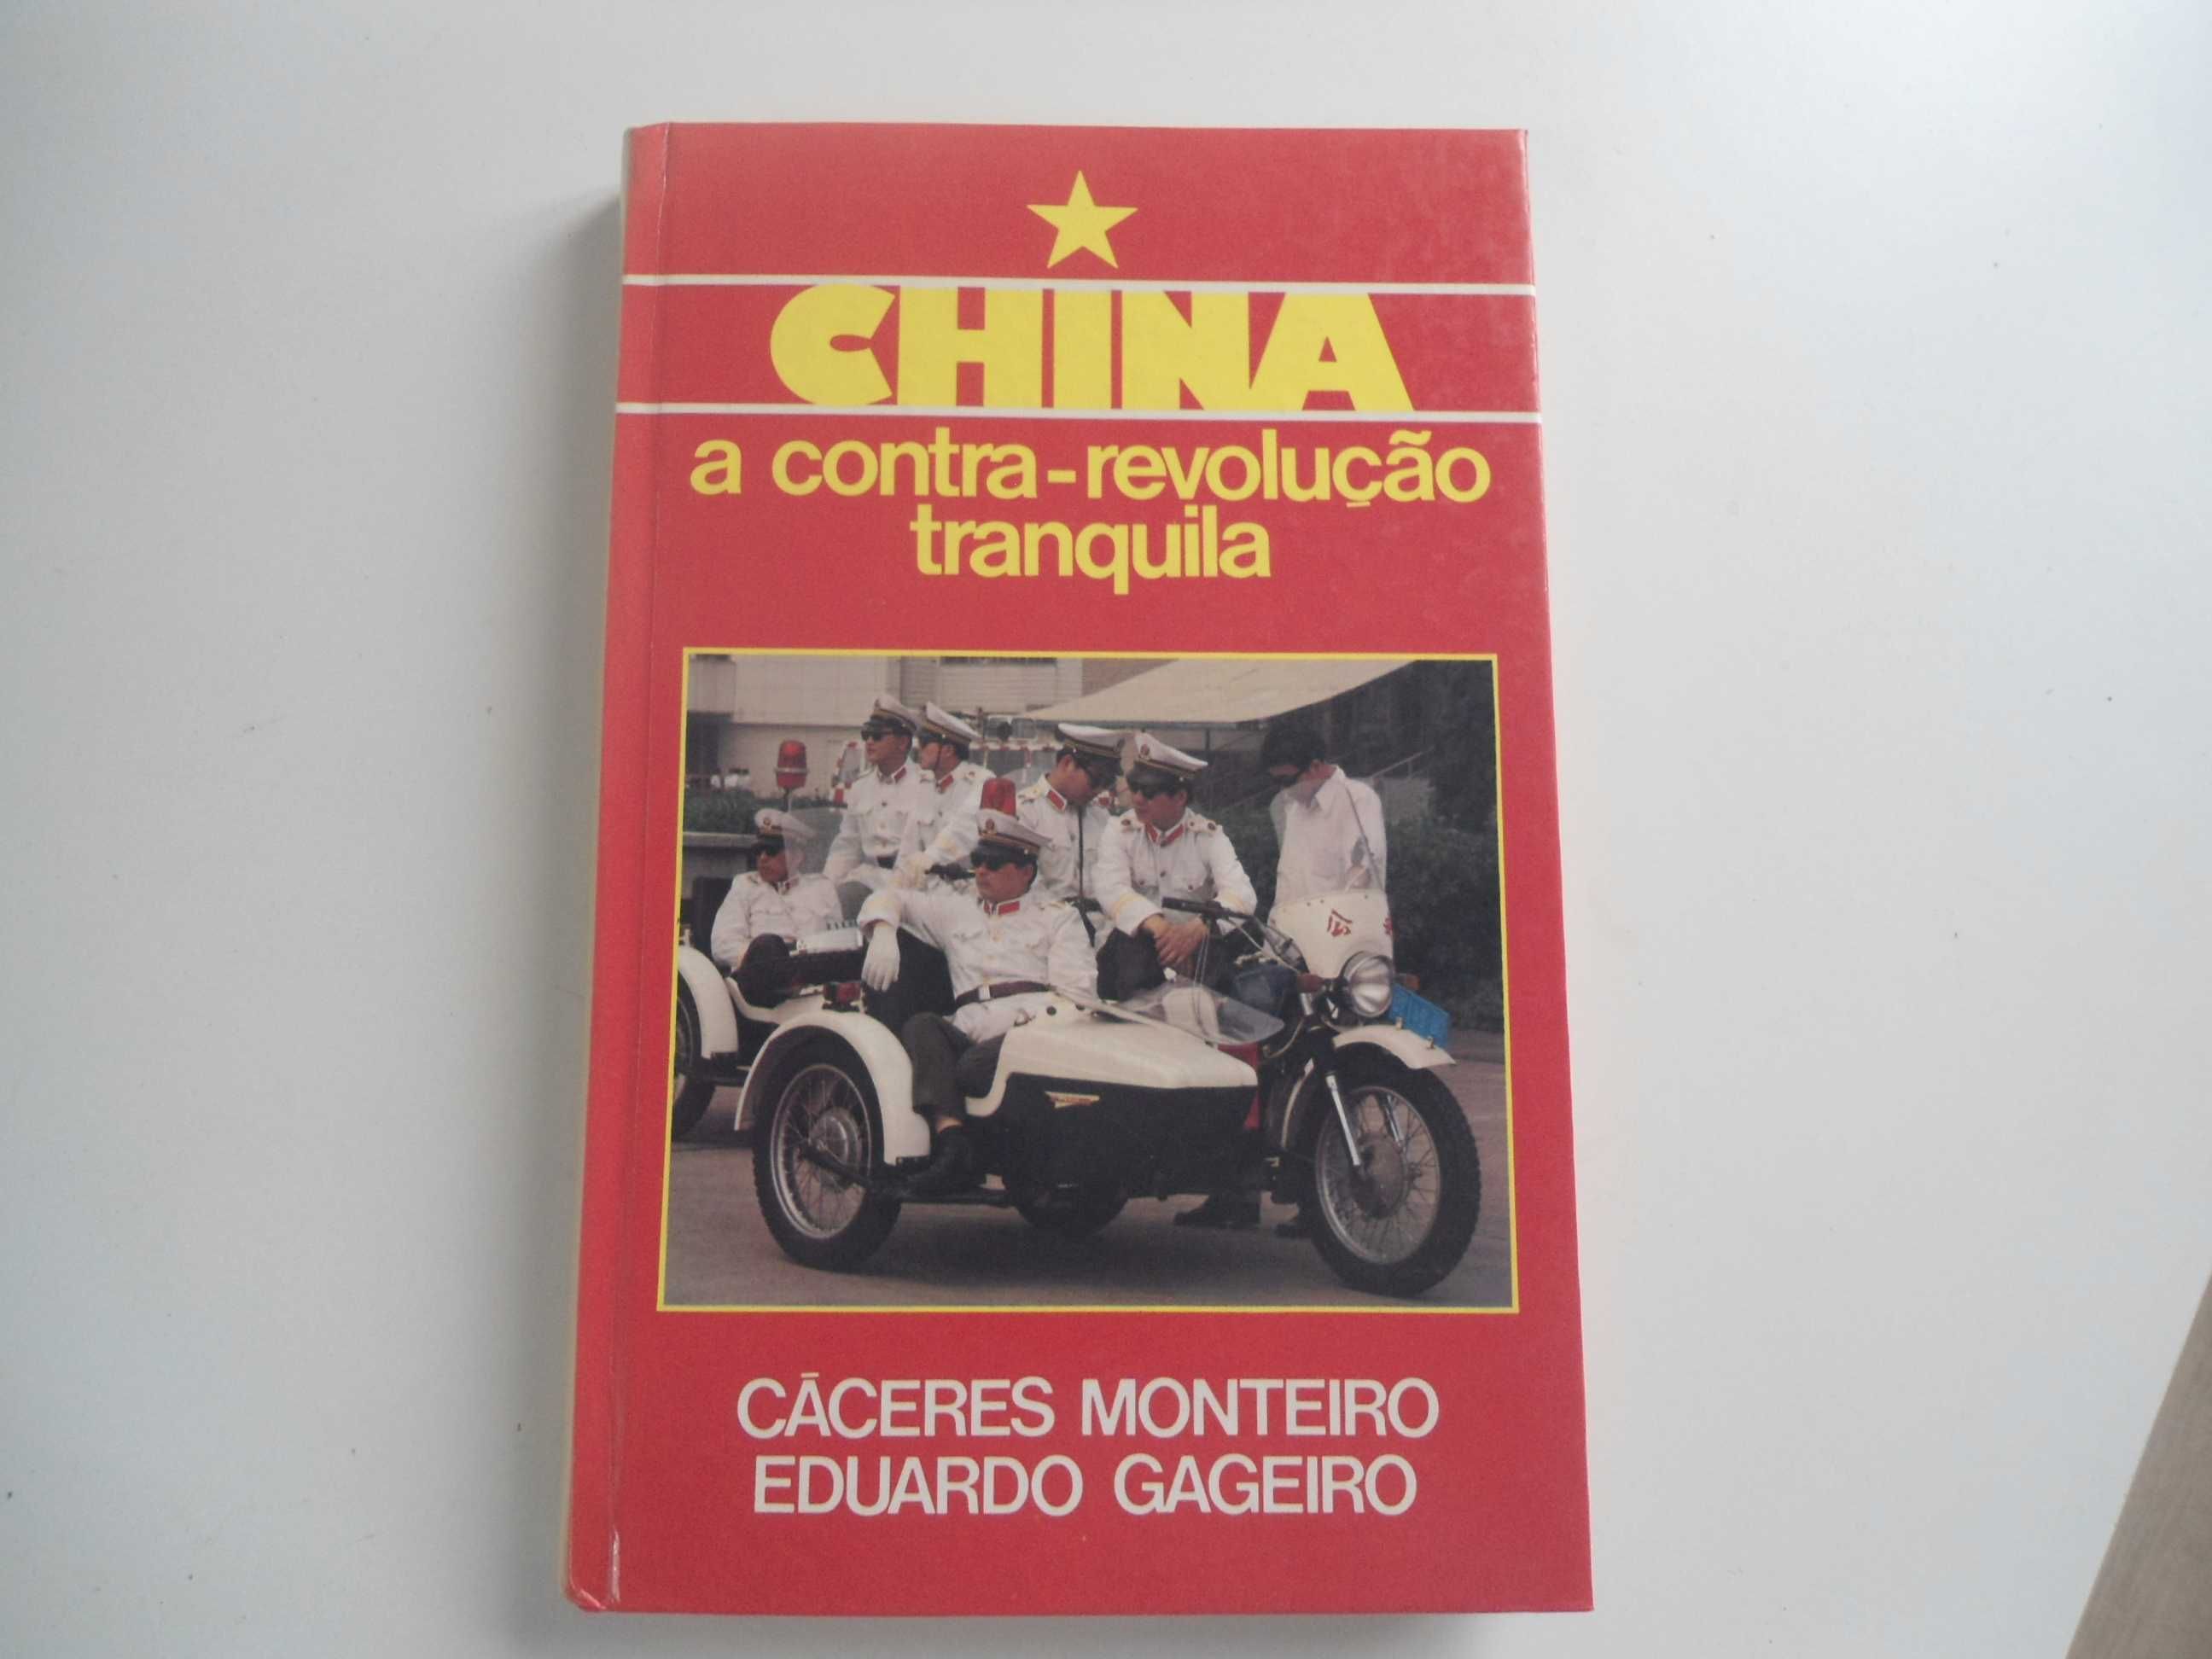 China-A Contra-revolução tranquila de Cáceres Monteiro/E. Gageiro